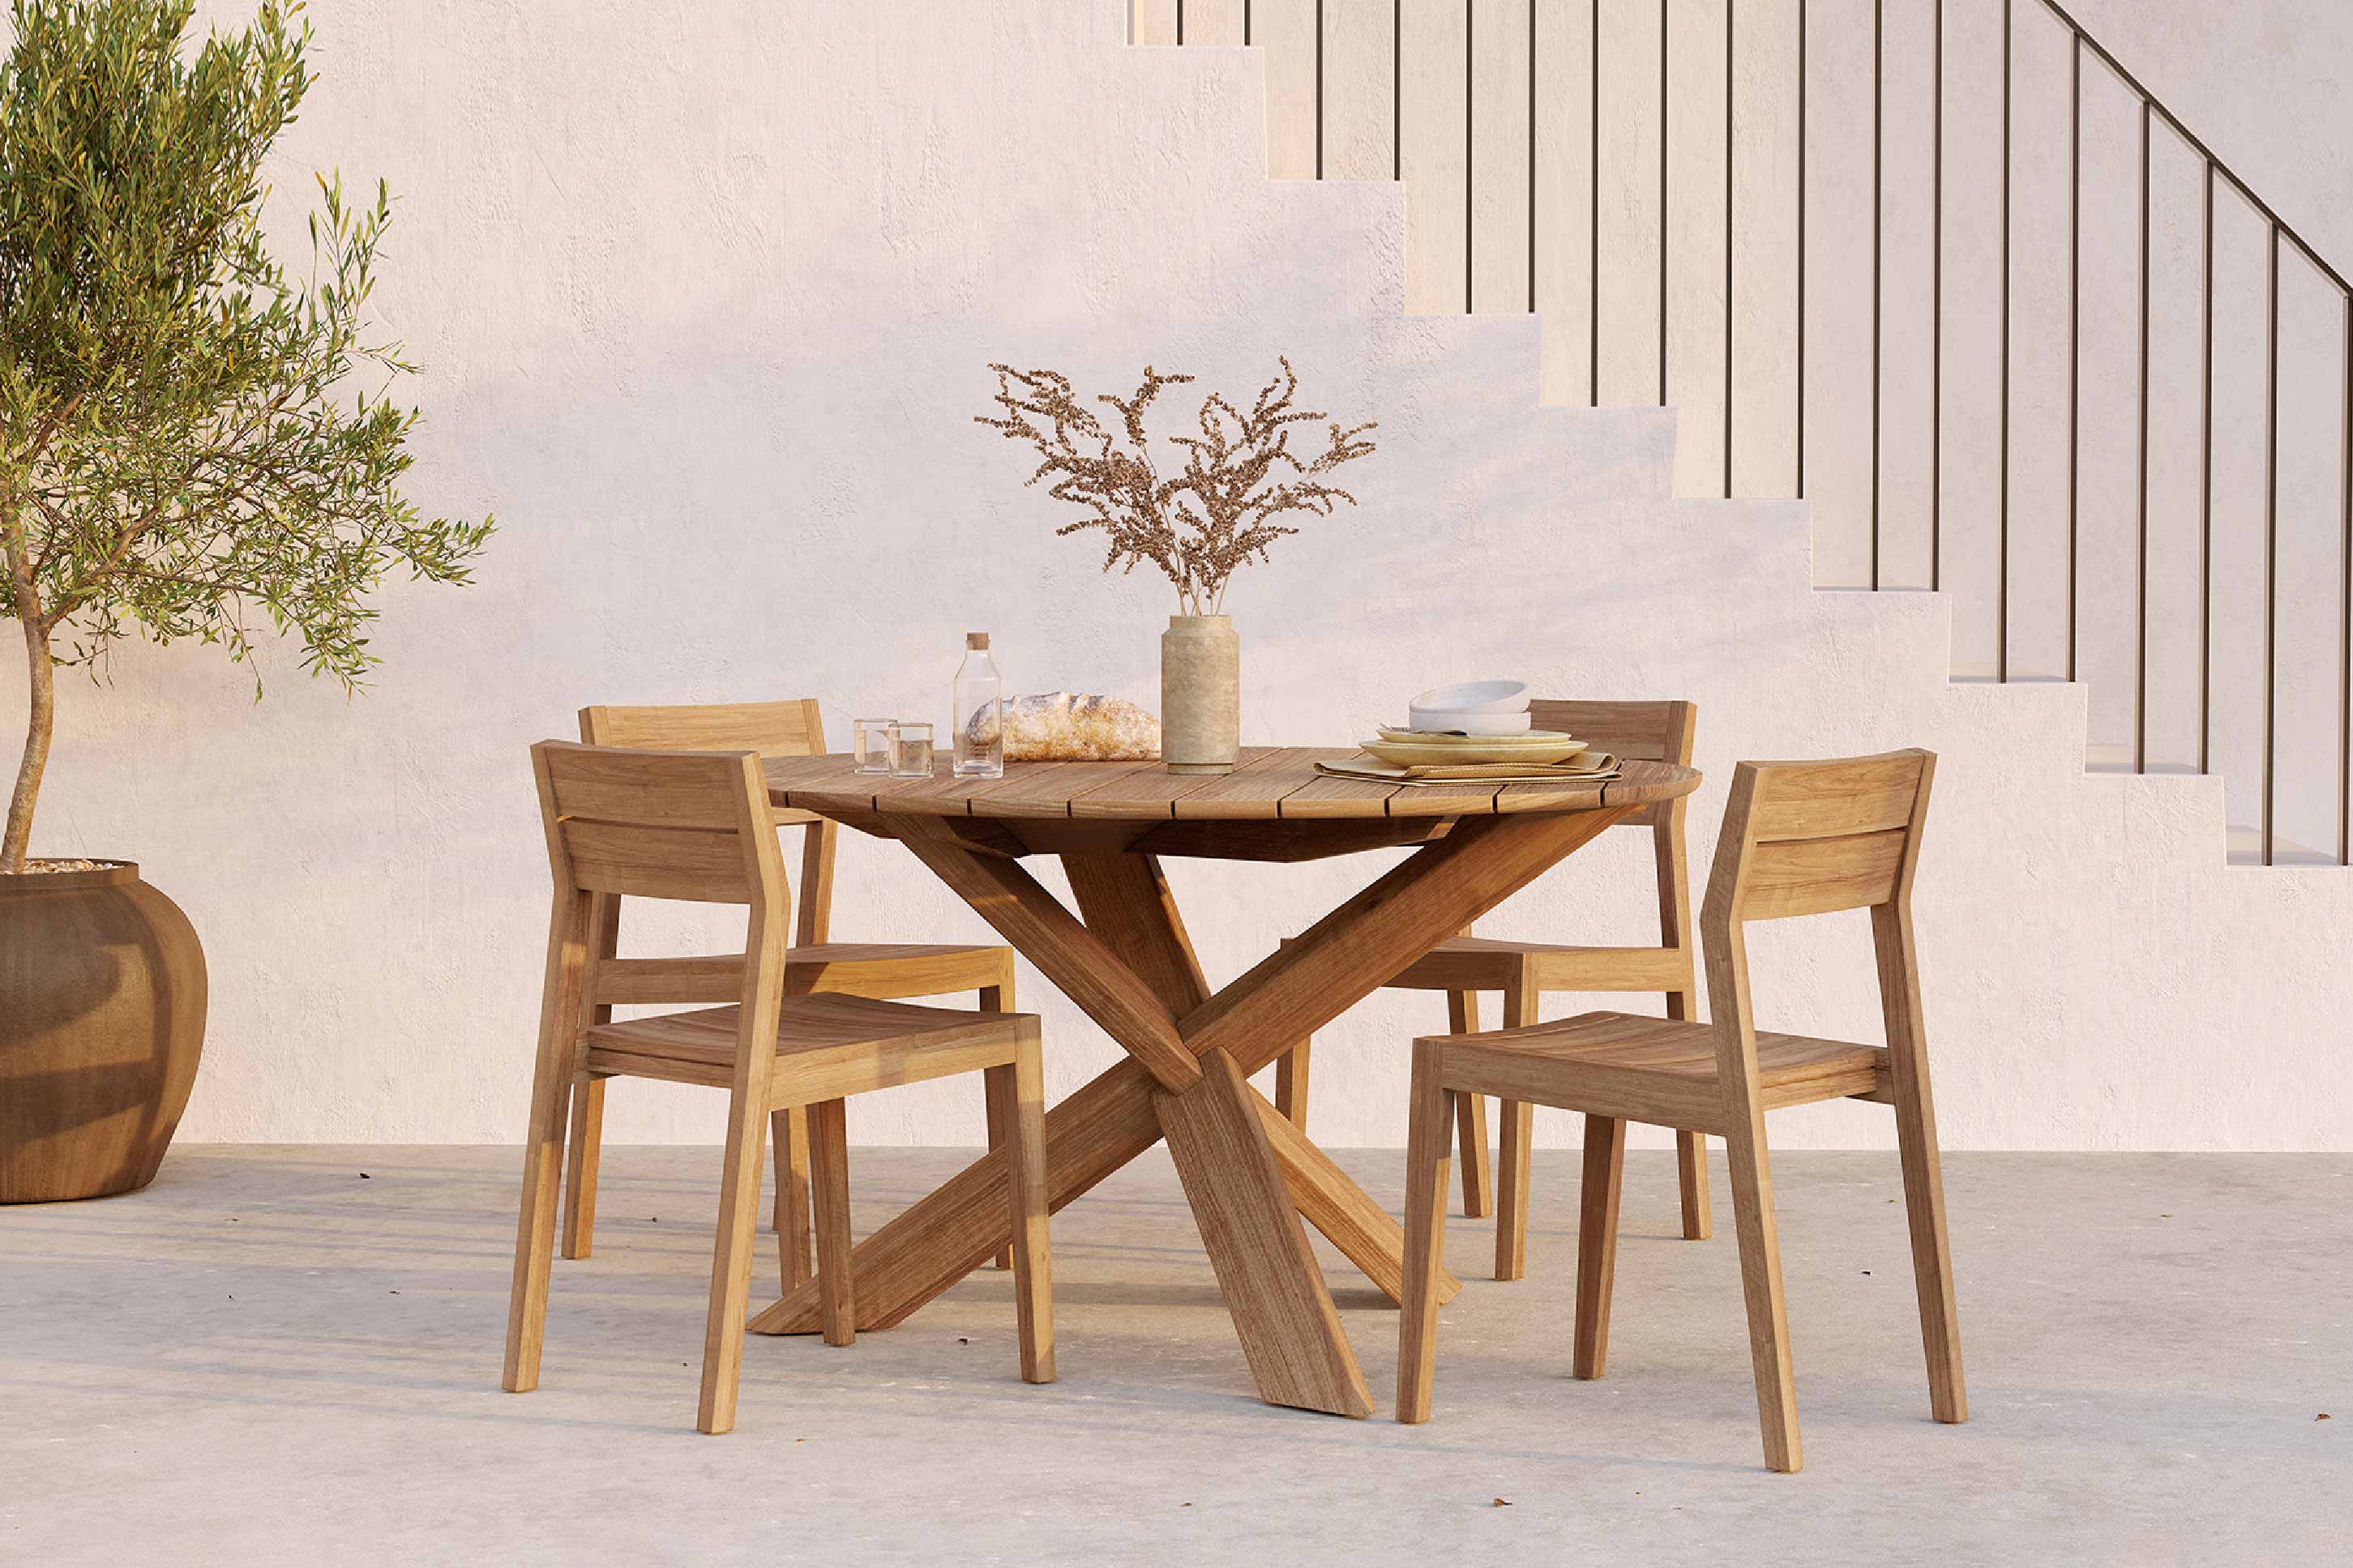 比利時原裝進口實木傢俬 - 戶外系列 - Ex 1系列柚木餐椅